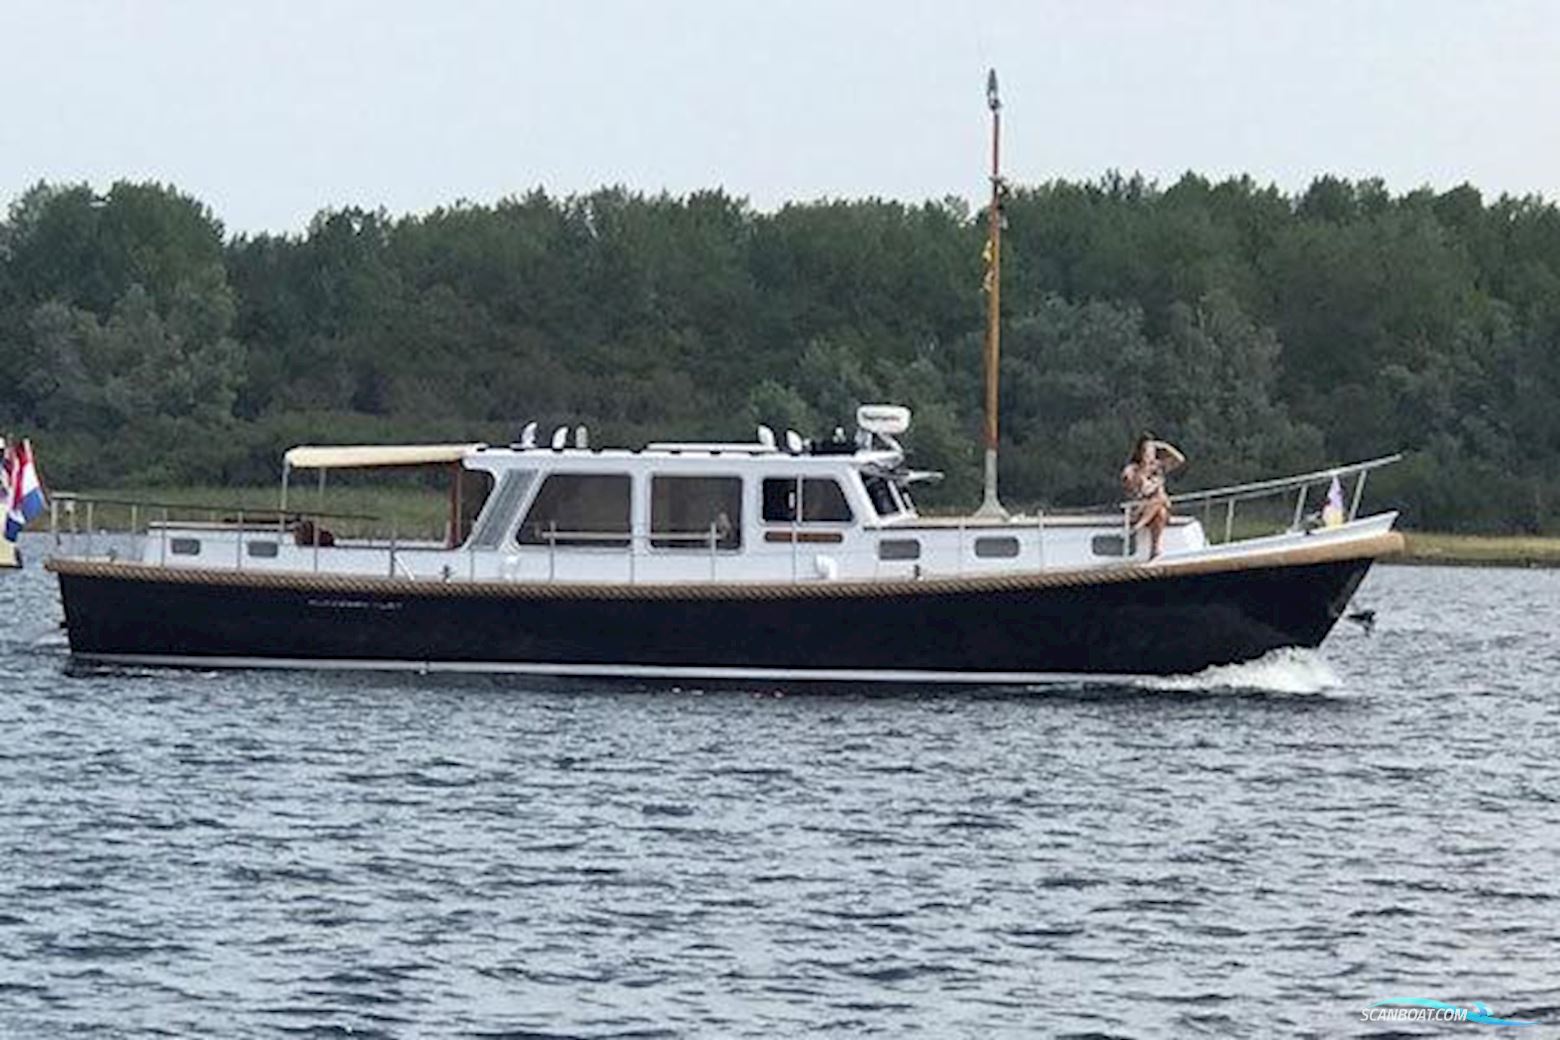 Klaassen Vlet 13.60 Motor boat 1991, with Man engine, The Netherlands